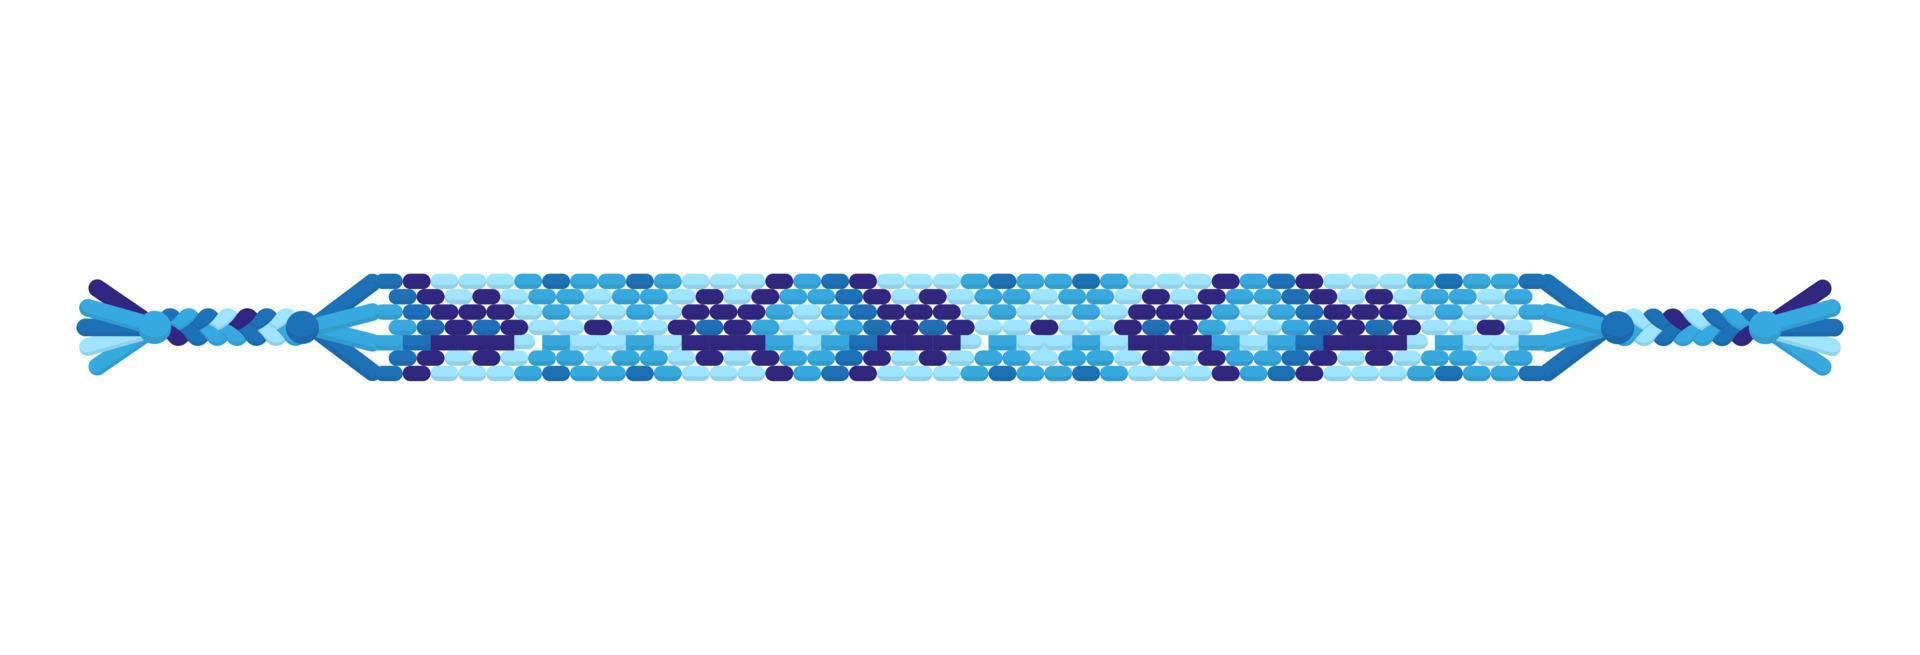 vector multicolor pulsera de la amistad hippie hecha a mano de hilos azules.